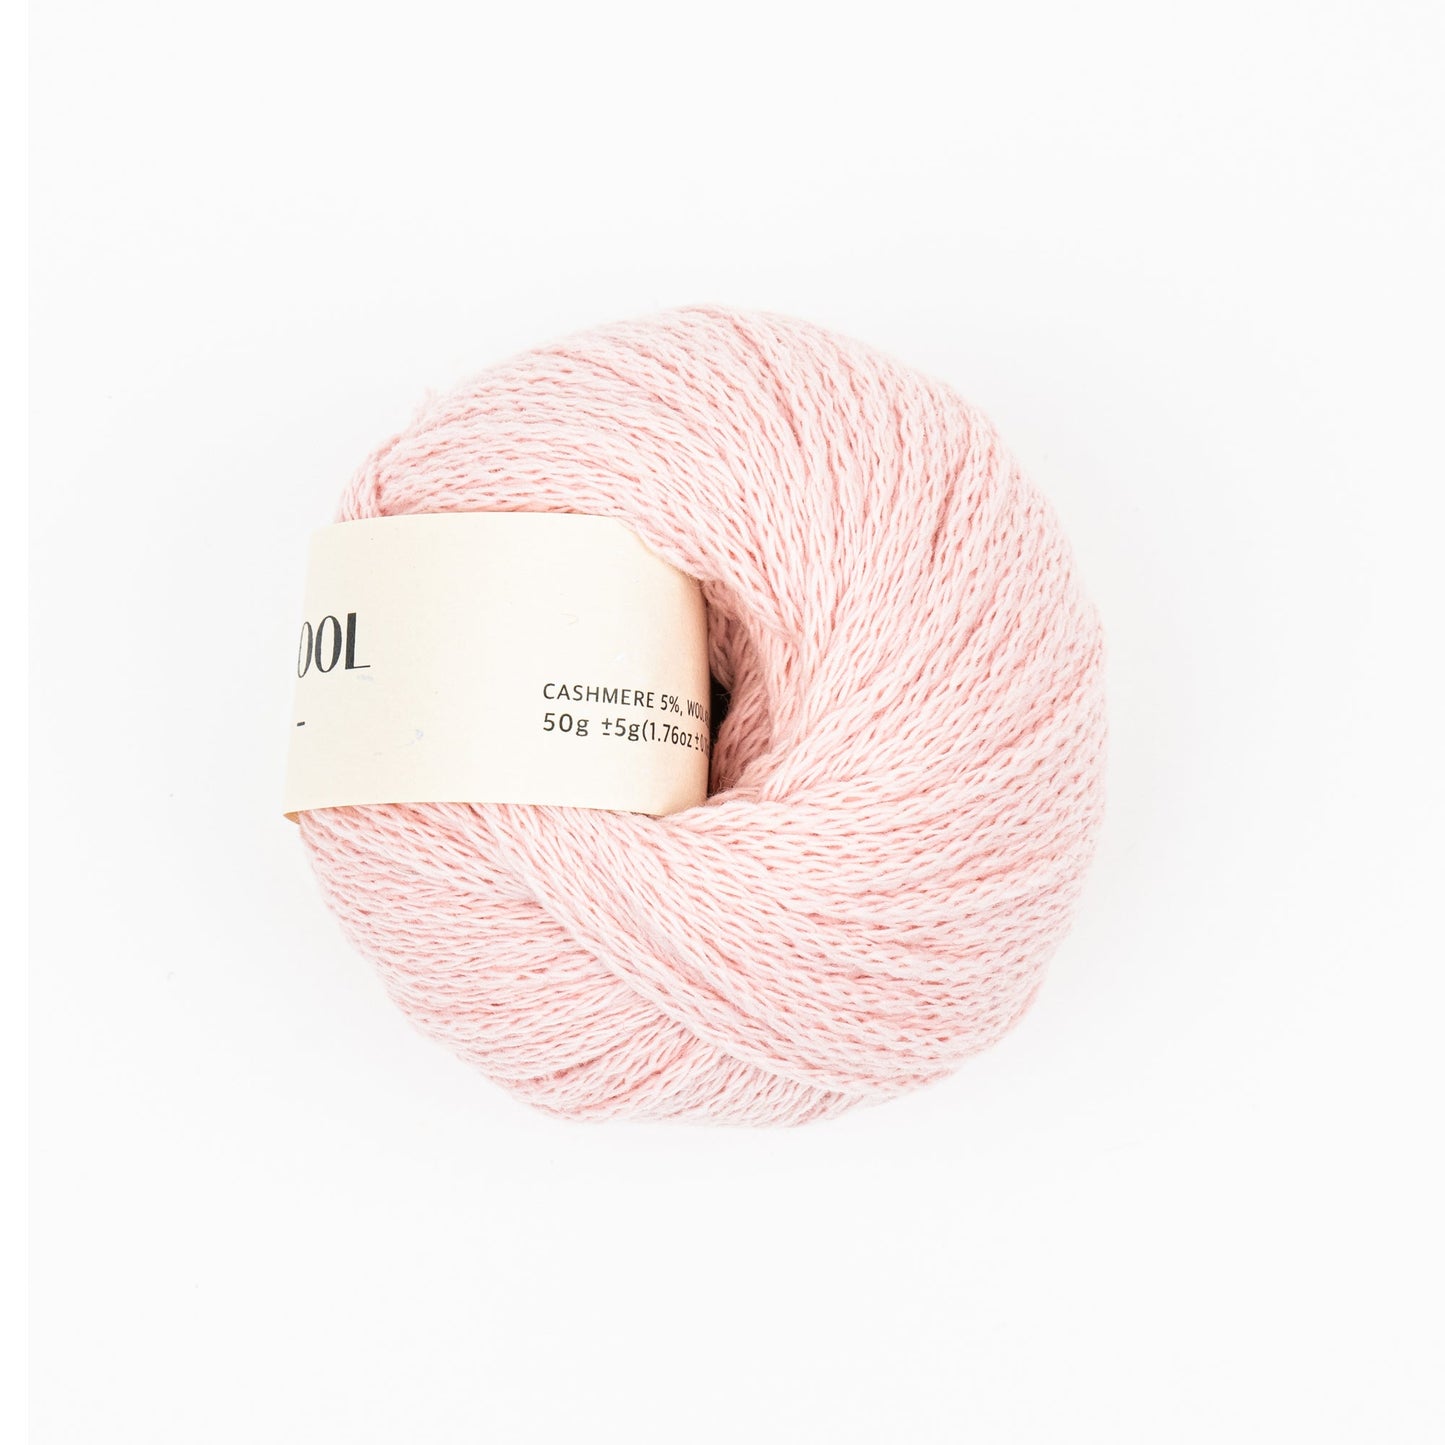 Cashwool, Cashmere Wool Nylon Mixed Yarn, Pretty Colors - Pink